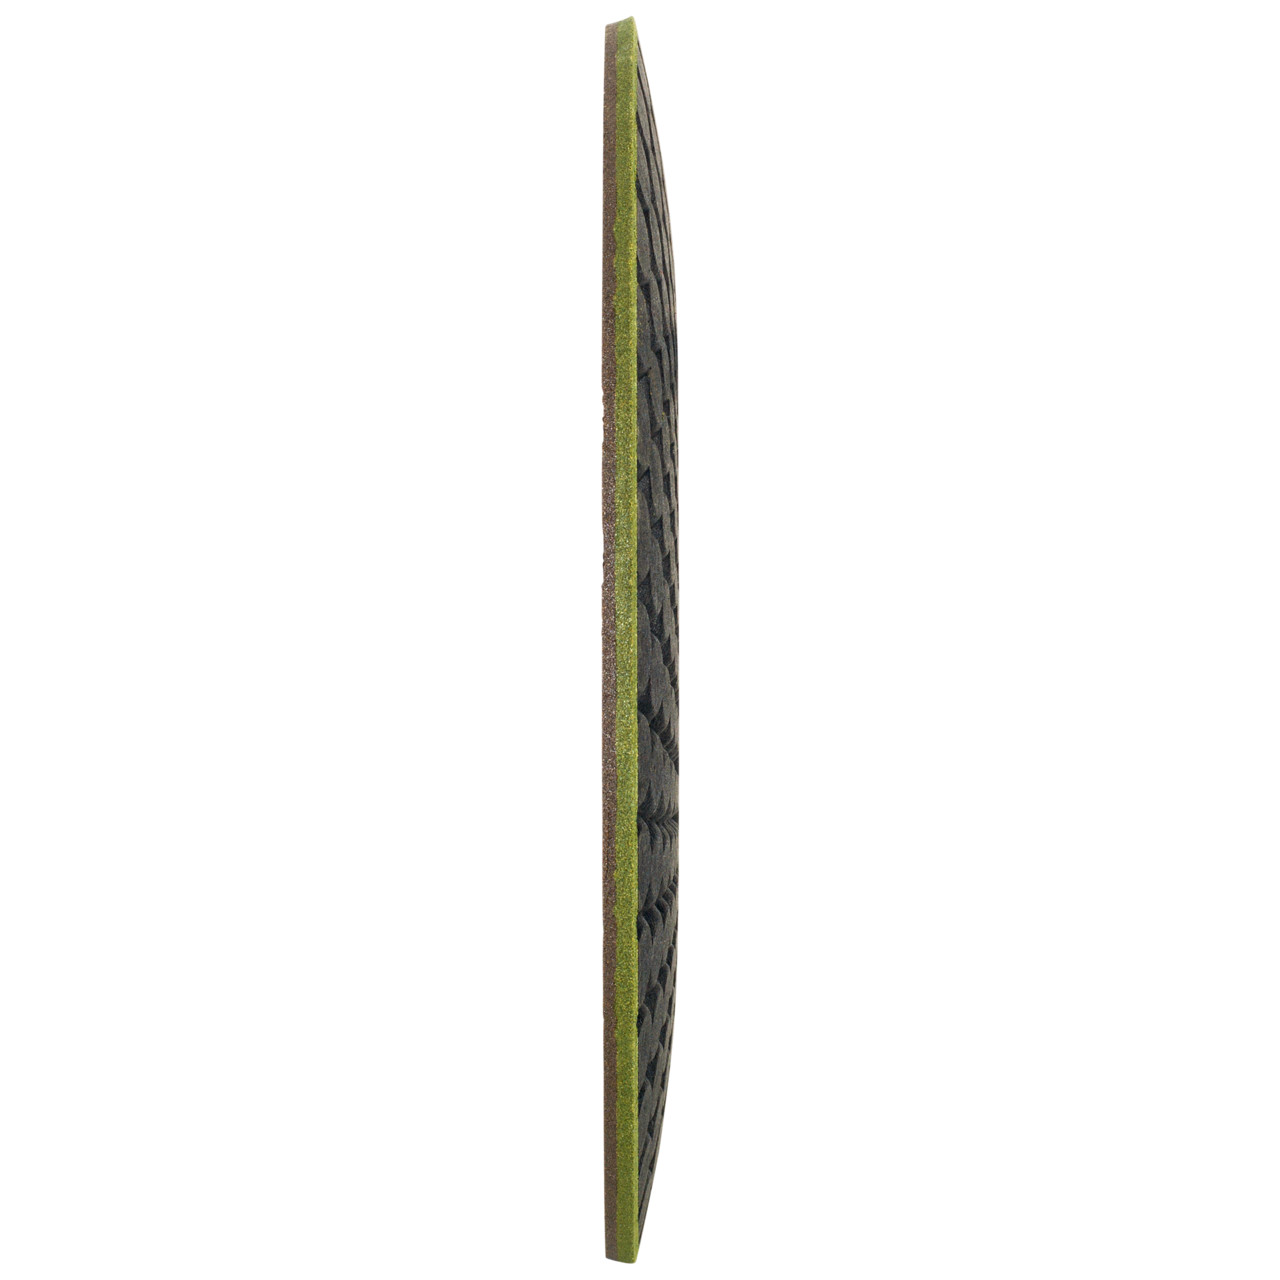 TYROLIT RONDELLER DxH 178x22,23 Per pietra, forma: 29RON (Rondeller®), Art. 908223